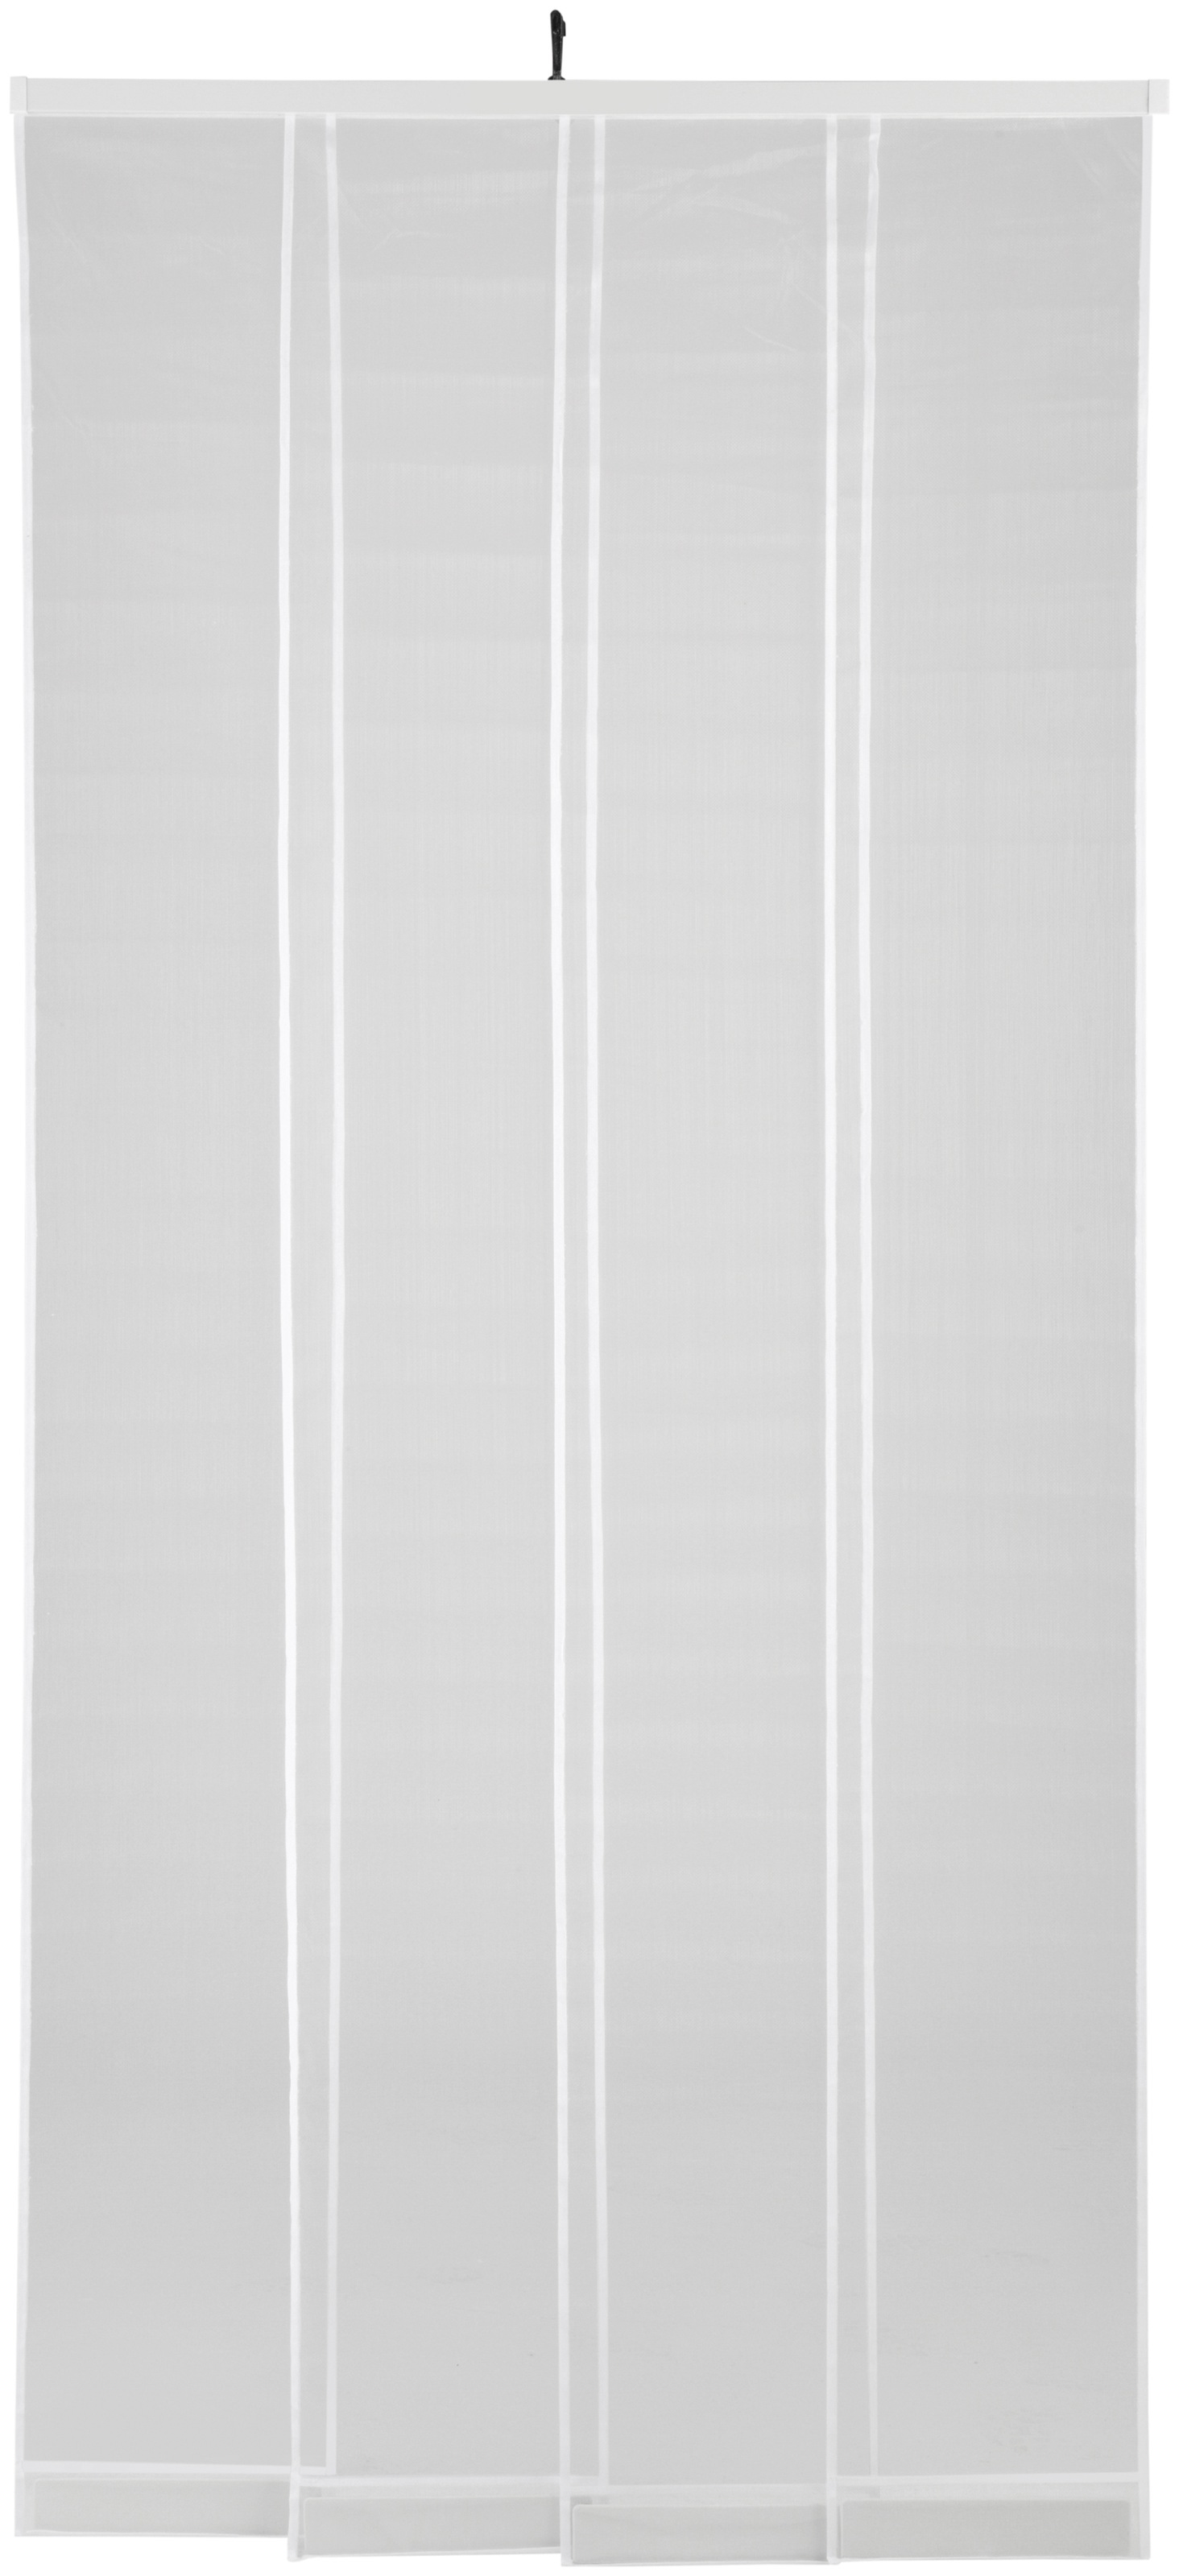 hecht international Insektenschutz-Vorhang "COMFORT", weiß, BxH: 100x220 cm